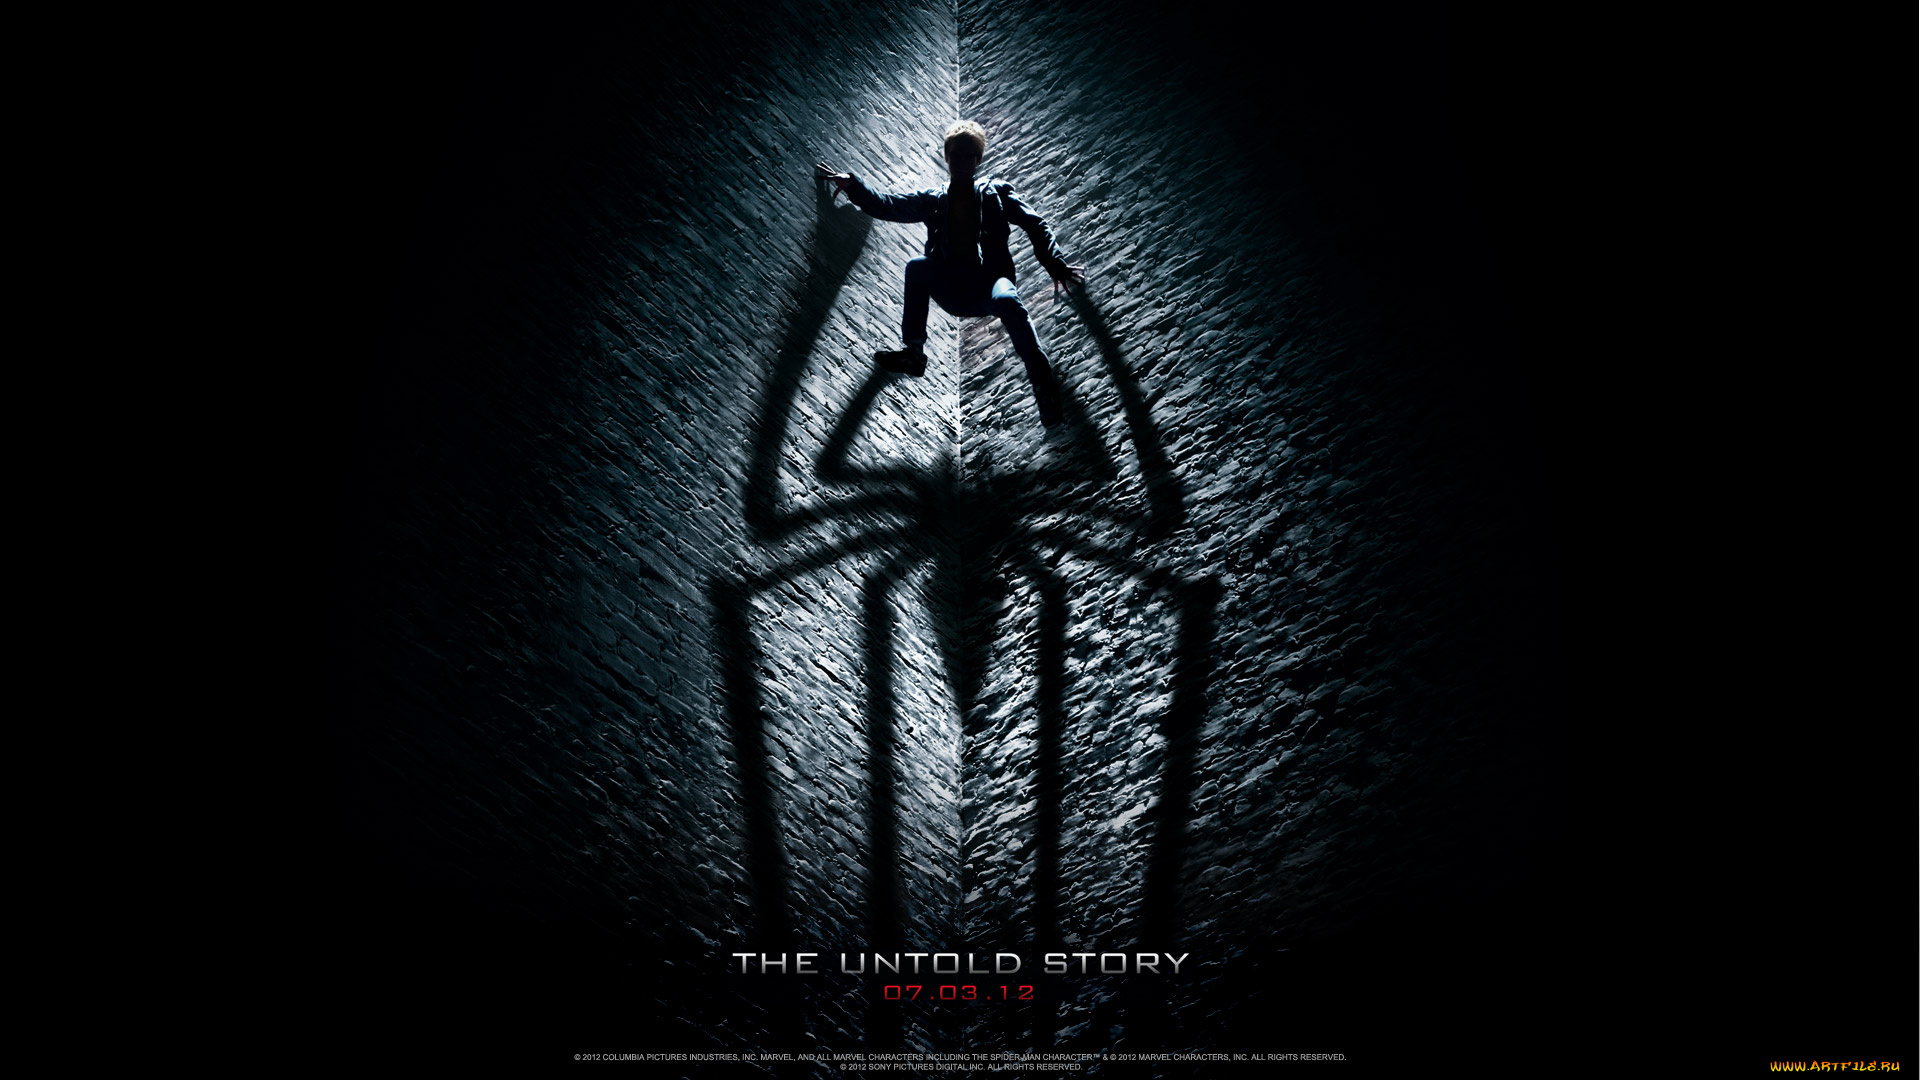 the, amazing, spider, man, кино, фильмы, spider-man